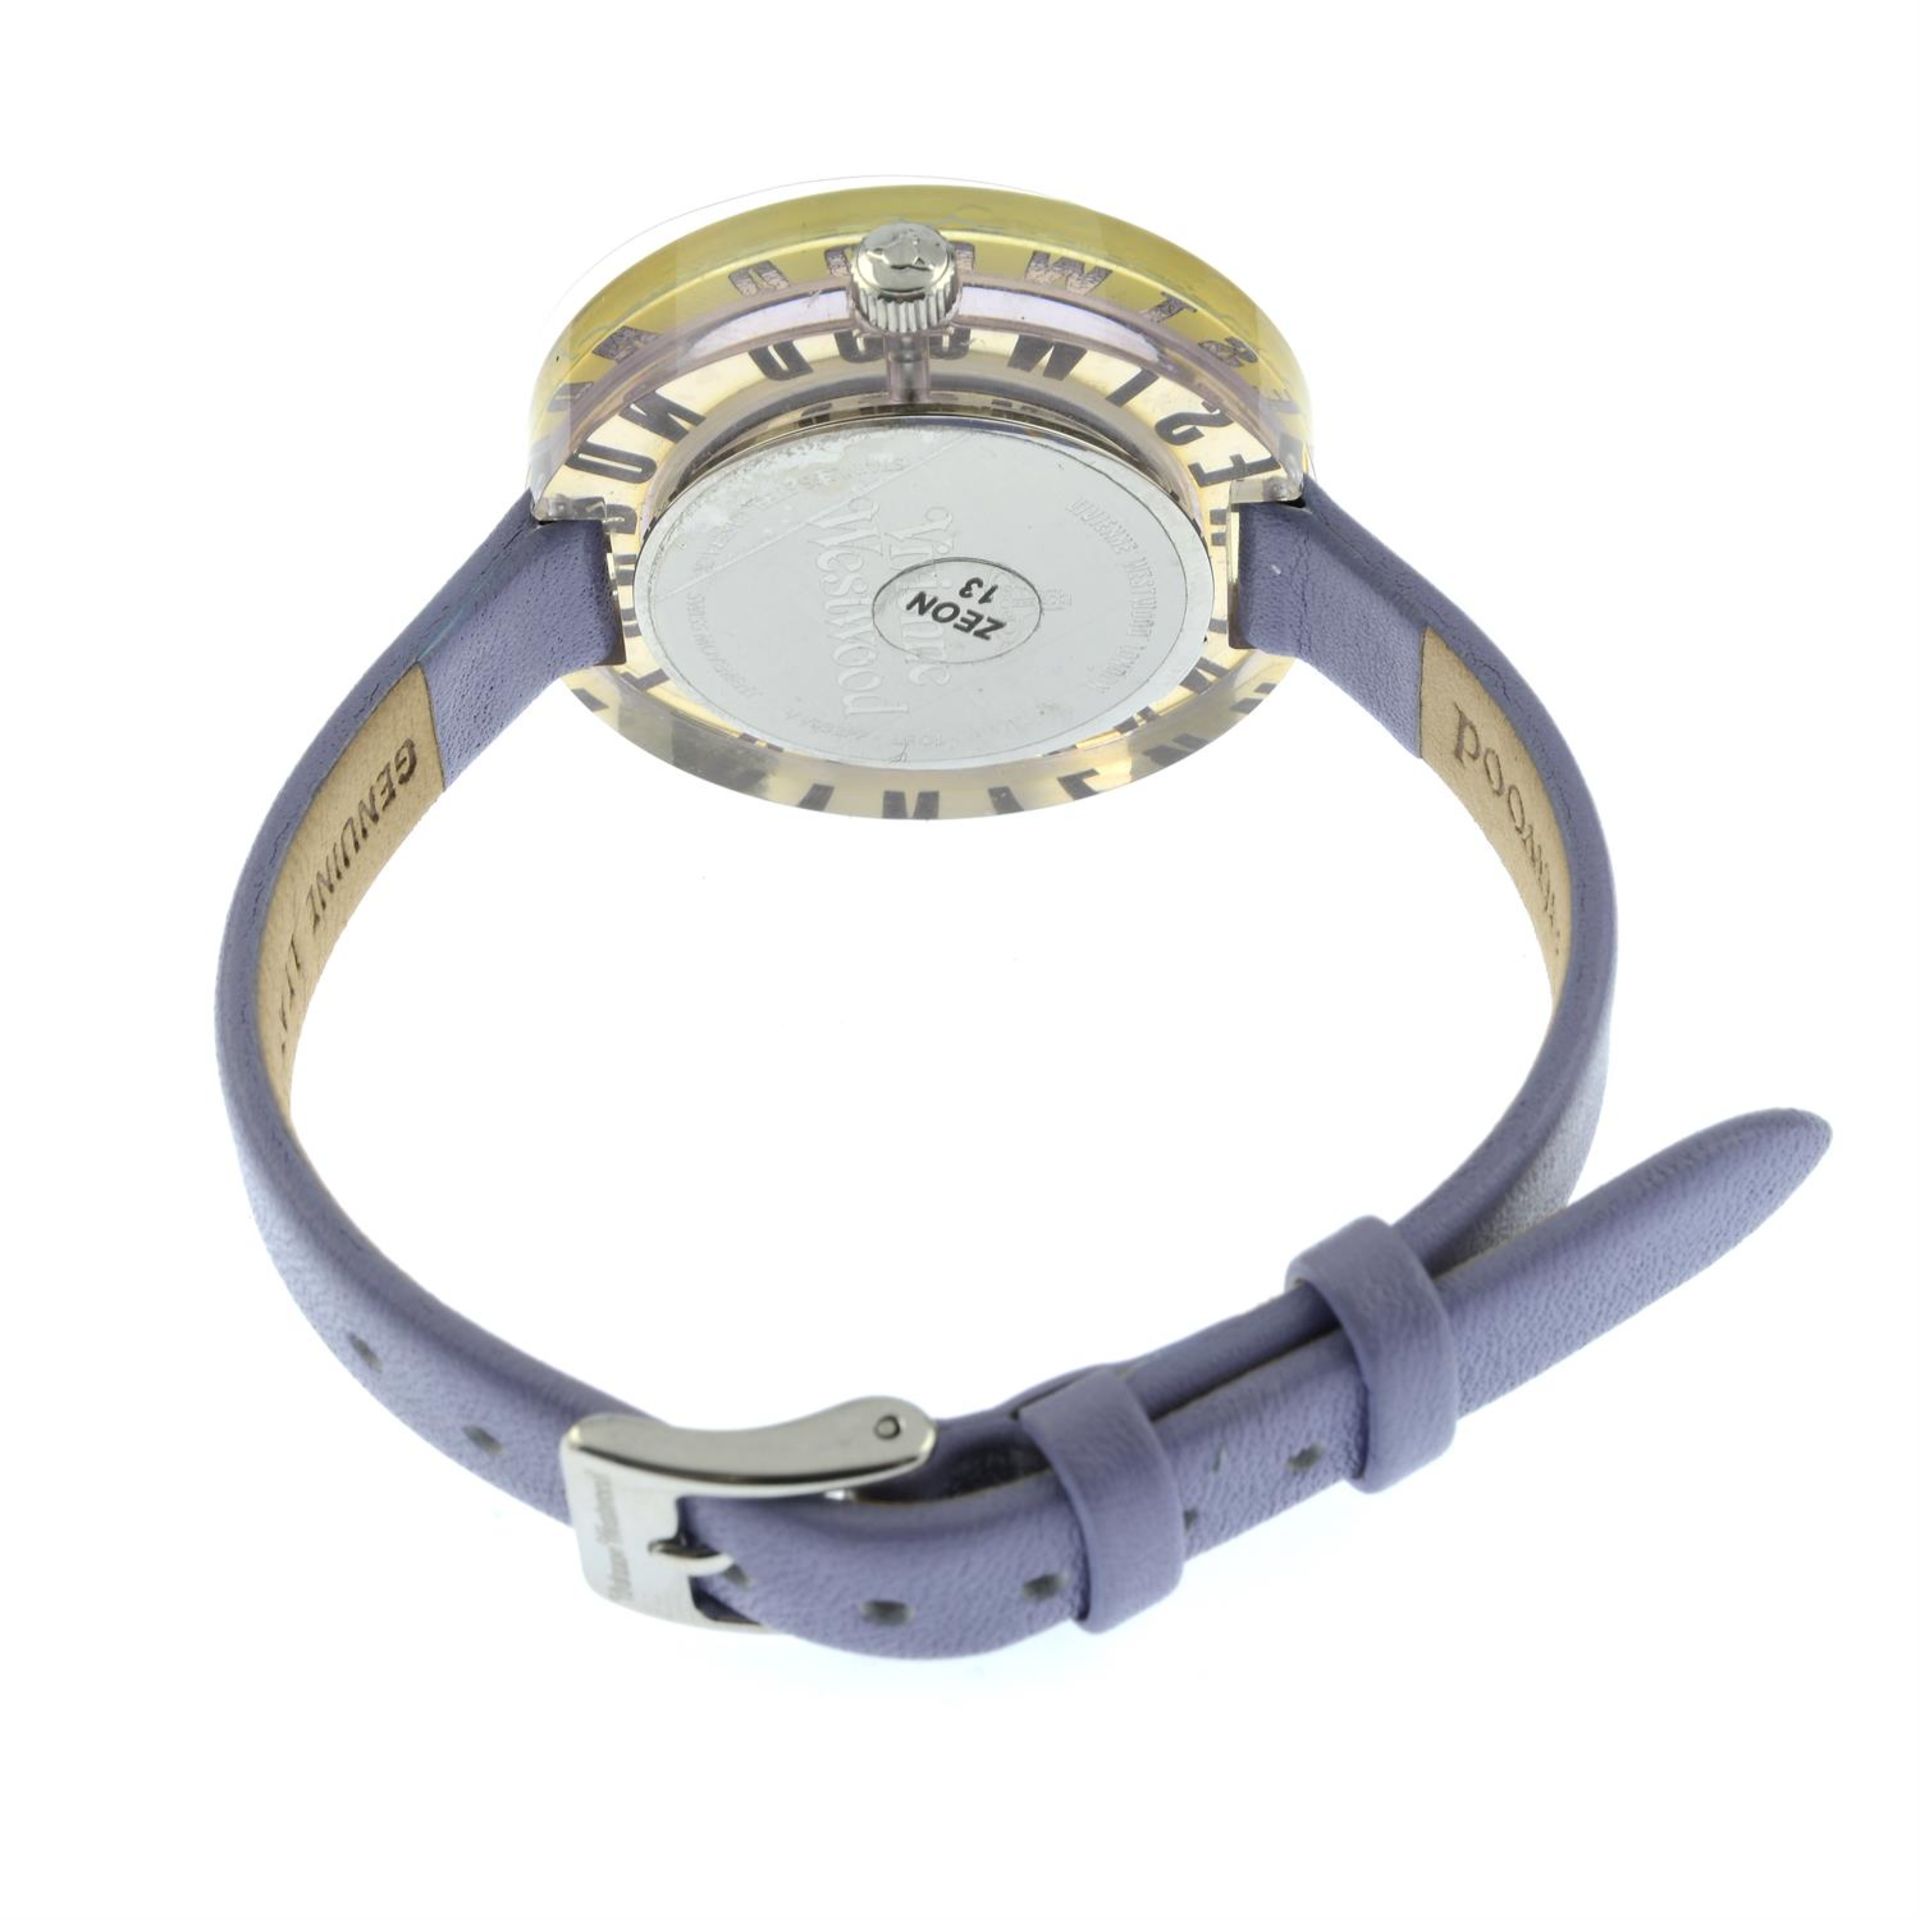 VIVIENNE WESTWOOD - a clarity quartz wrist watch. - Image 3 of 4